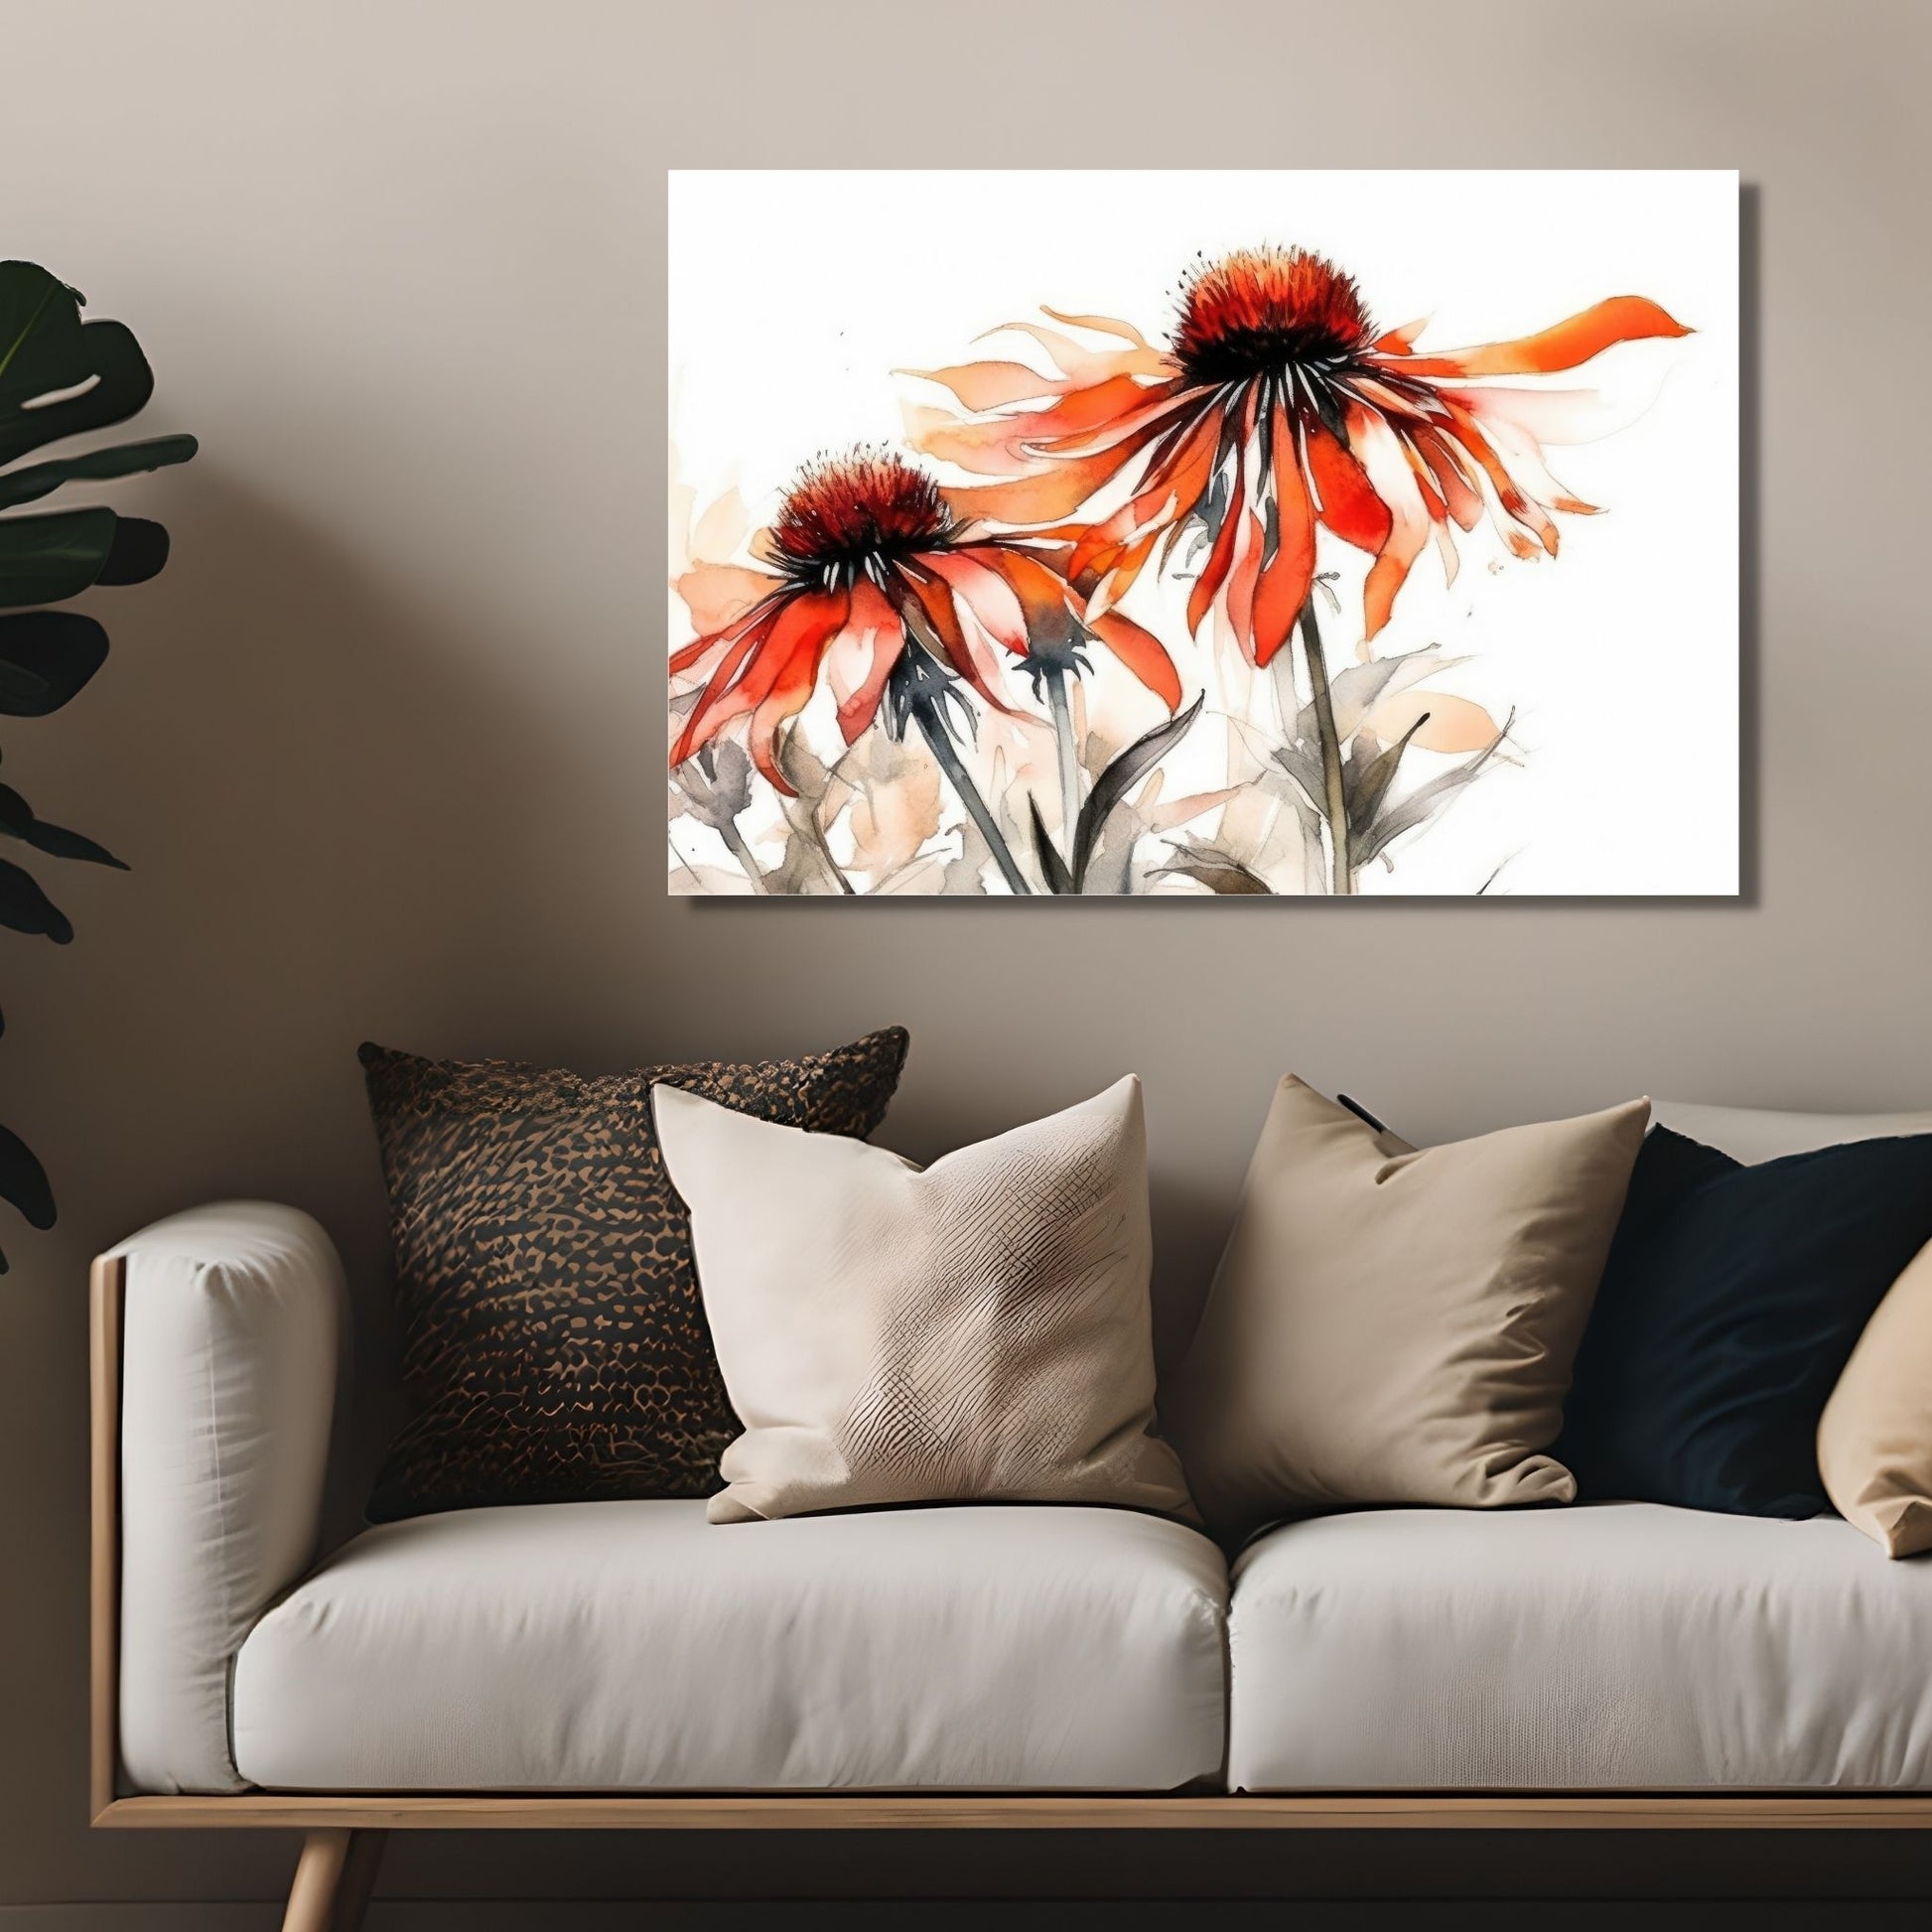 Nydelig abstrakt motiv av Solhattblomster. Blomstene er i rød-oransje nyanser. Dette er en grafisk fremstilling på plakat. På bildet henger plakaten over en sofa.